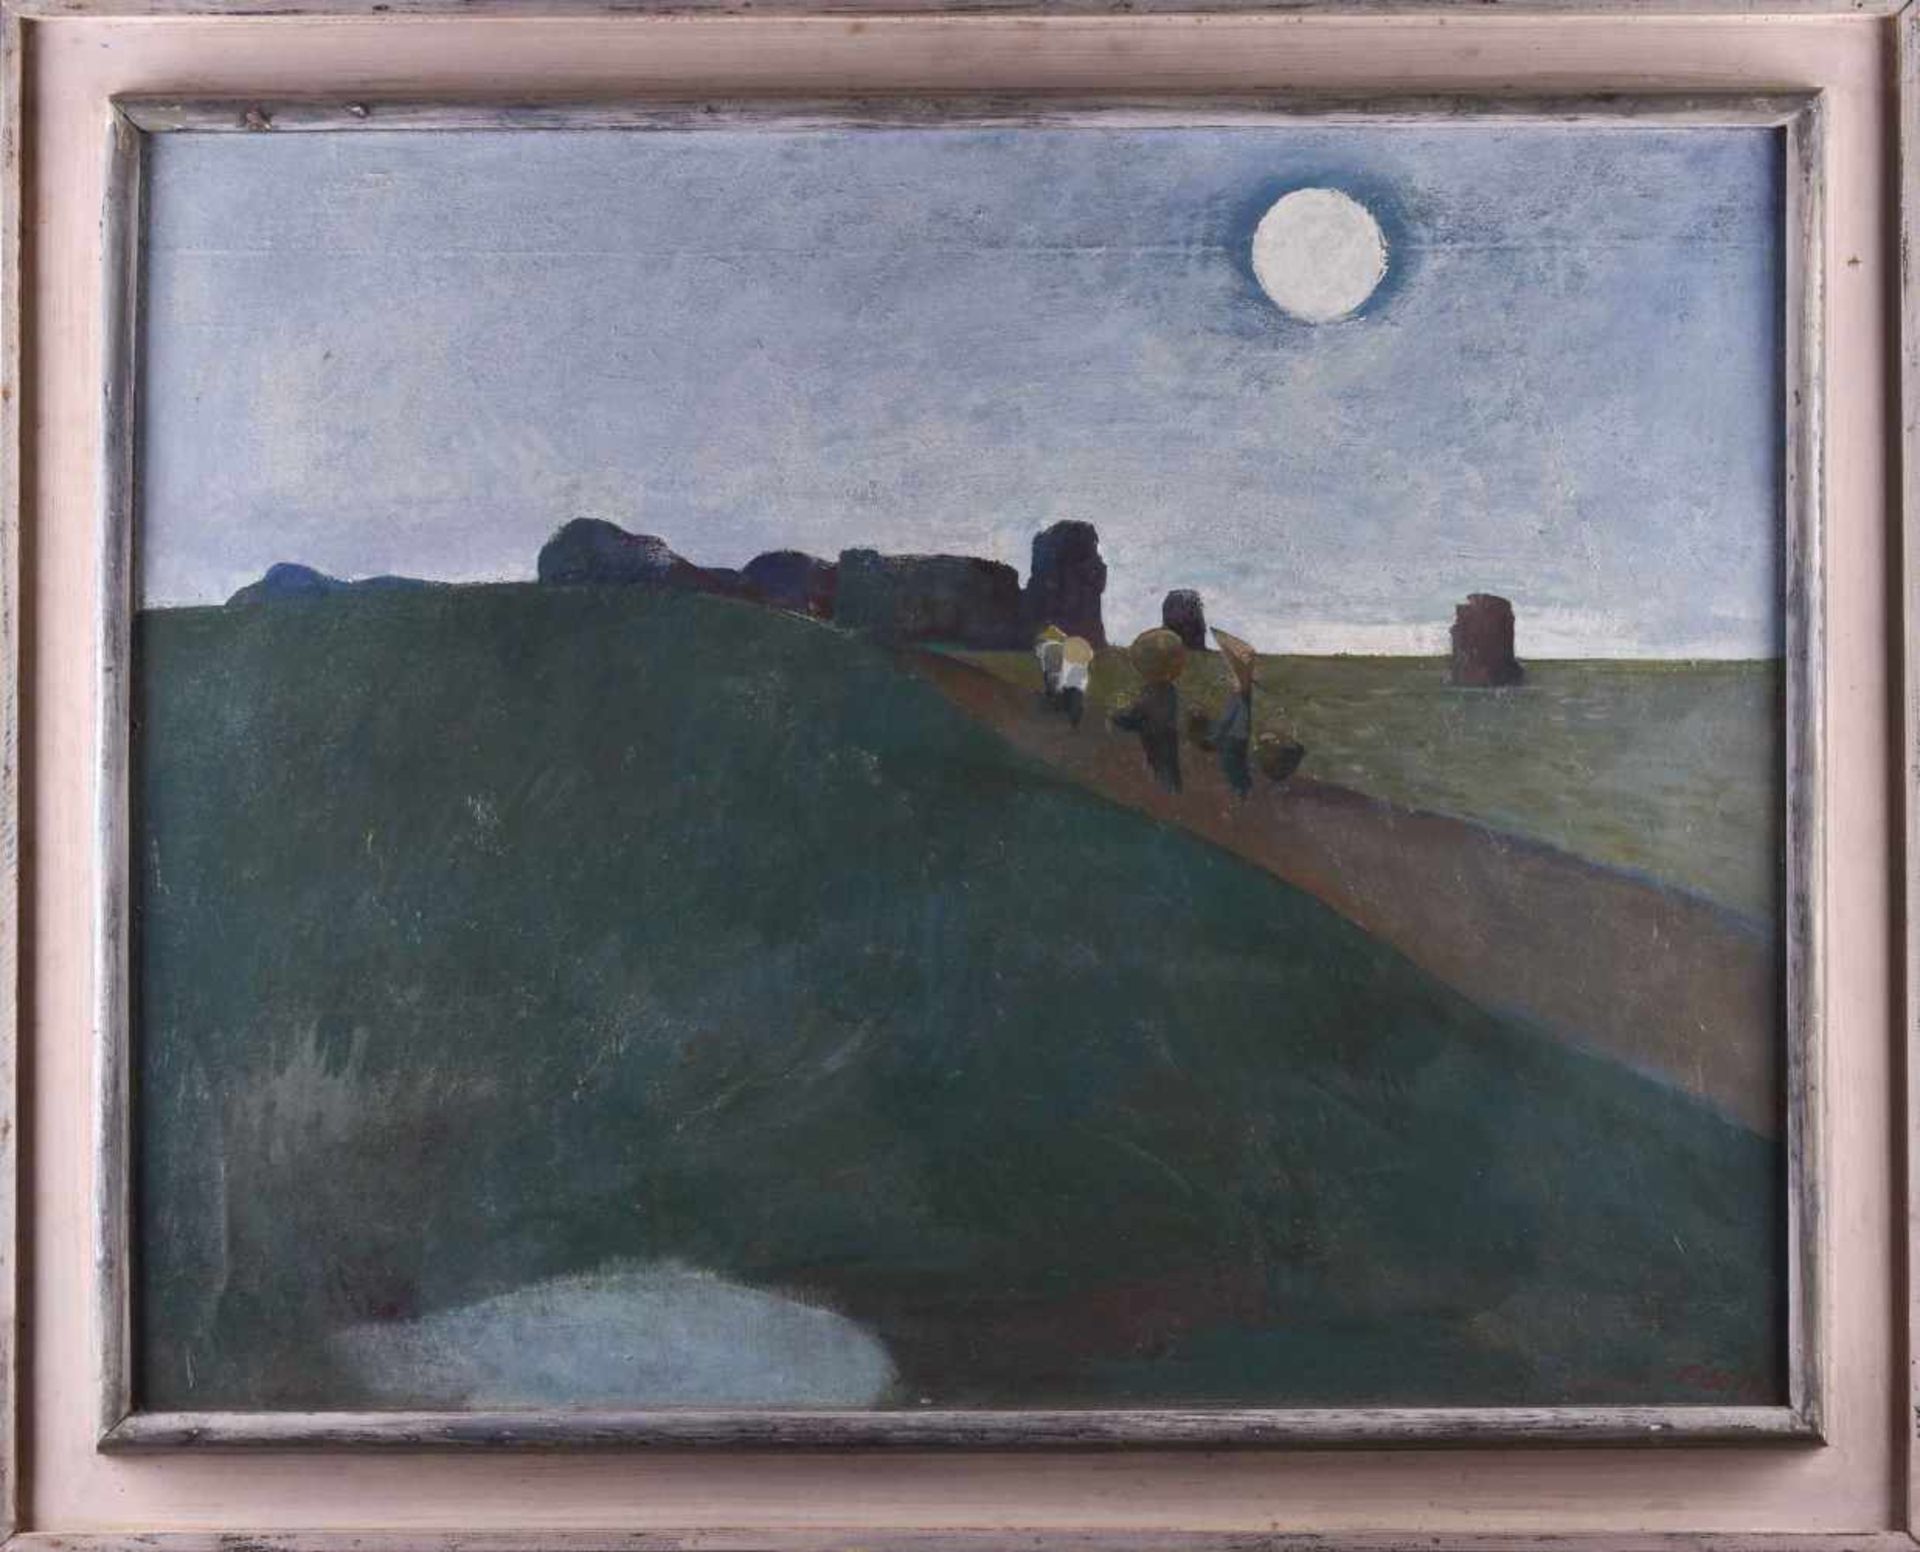 Fritz EISEL (1929-2010)"Mond über dem roten Fluss"painting oil / hardboard, 70 cm x 90 cm, with - Bild 2 aus 5